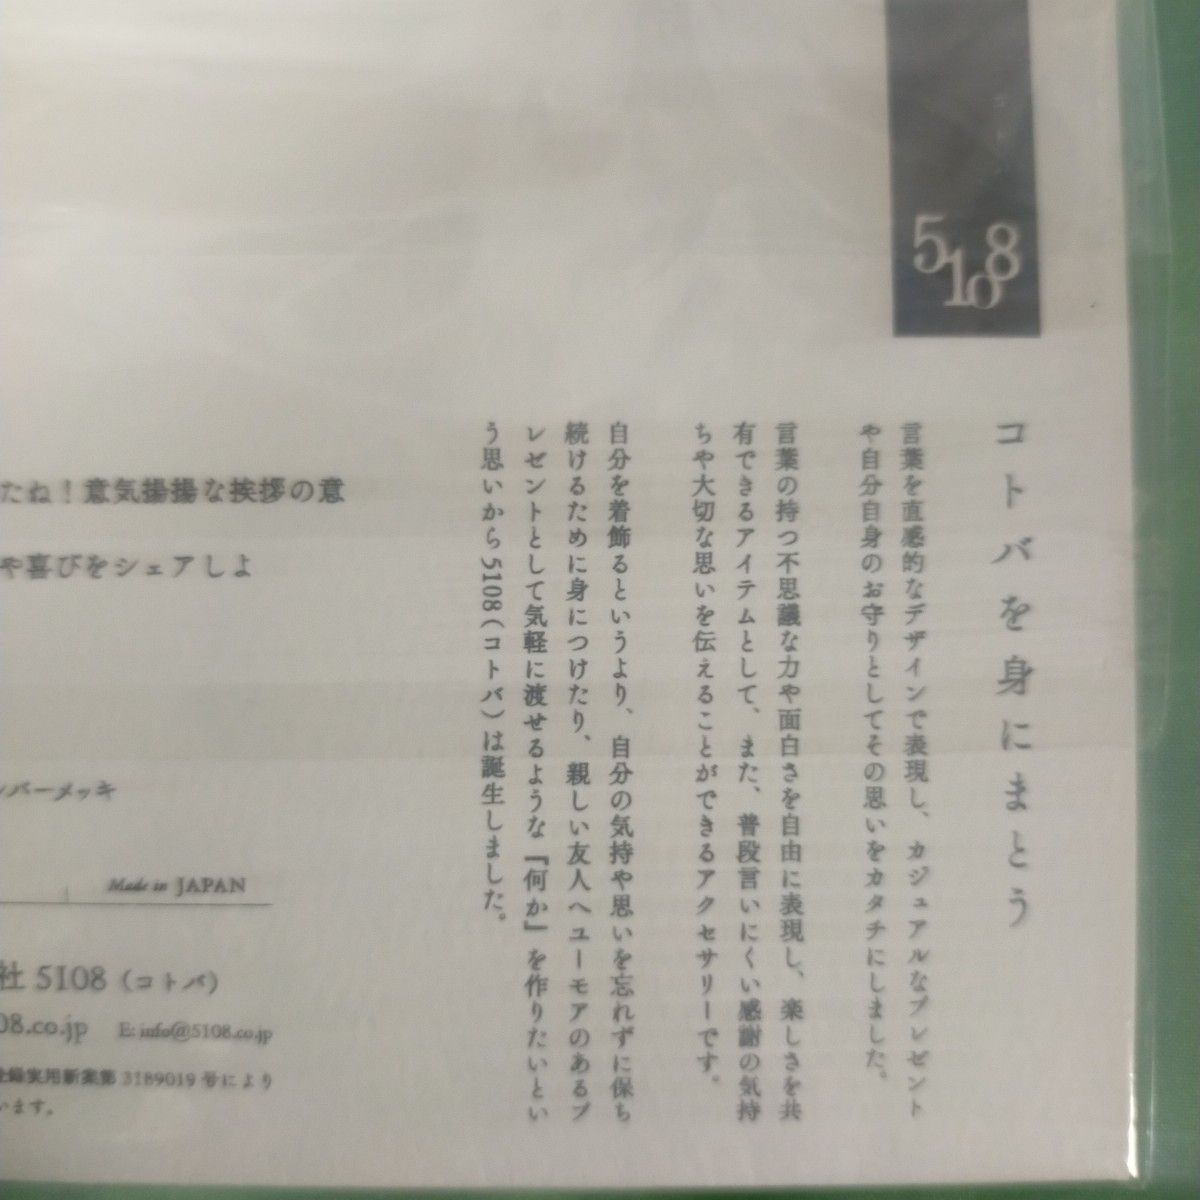 5108(コトバ)　ラペルピン　Hi5(ハイファイブ)　新品